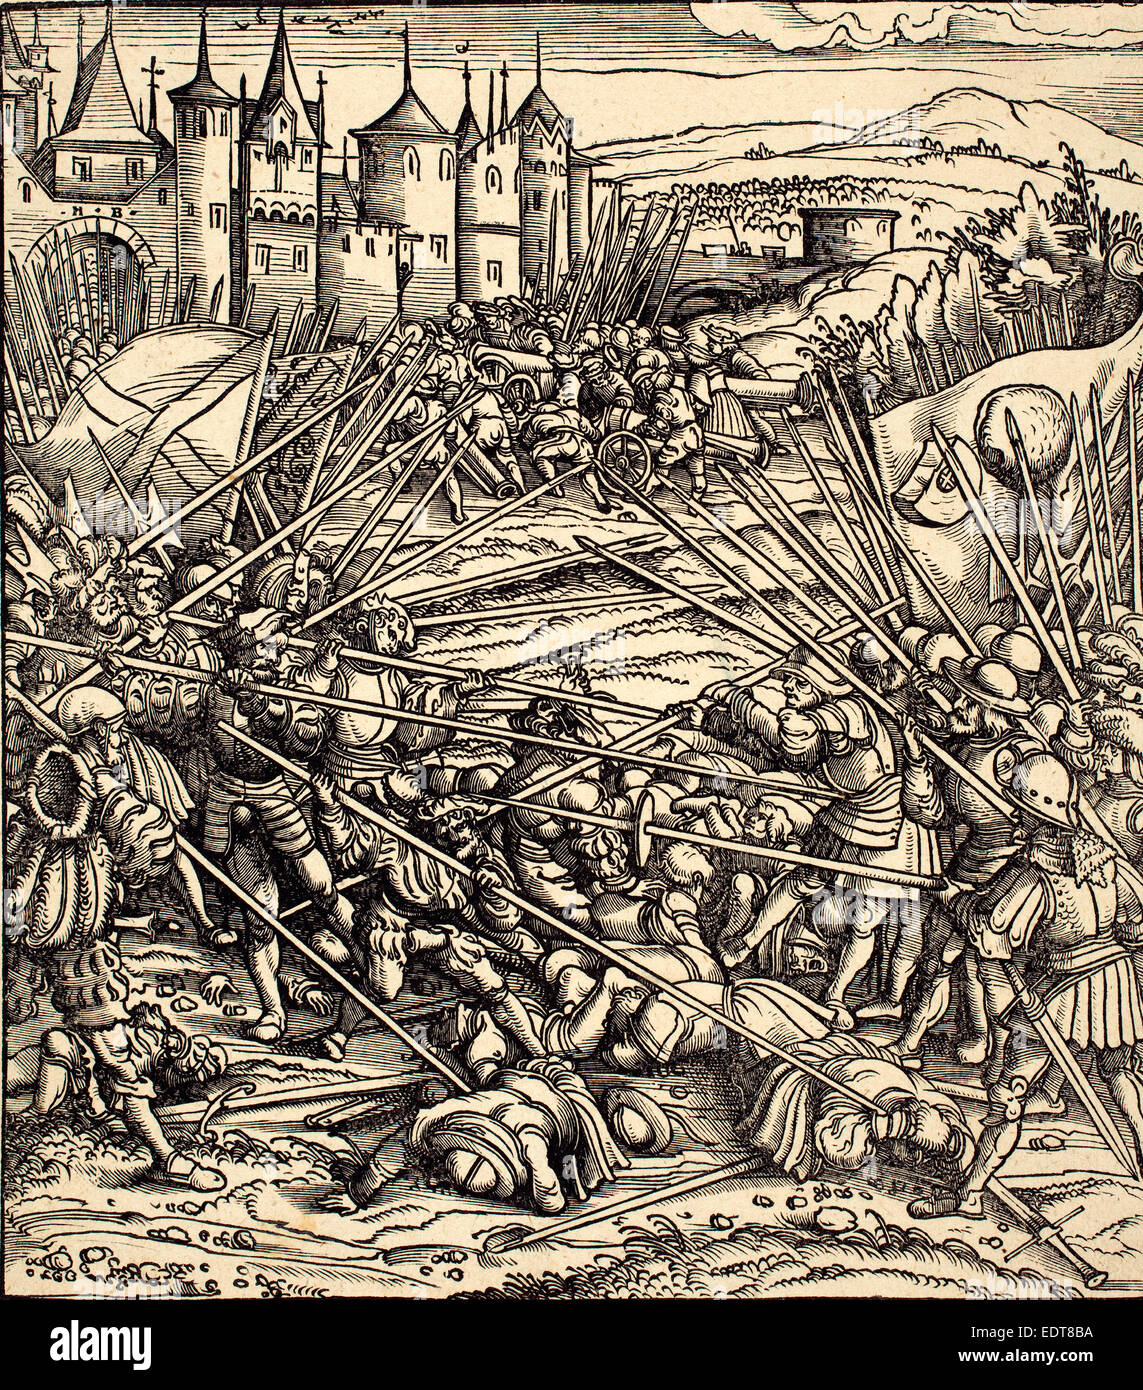 Hans Burgkmair I (Allemand, 1473 - 1531), bataille de la soldats de pied de lances, gravure sur bois Banque D'Images